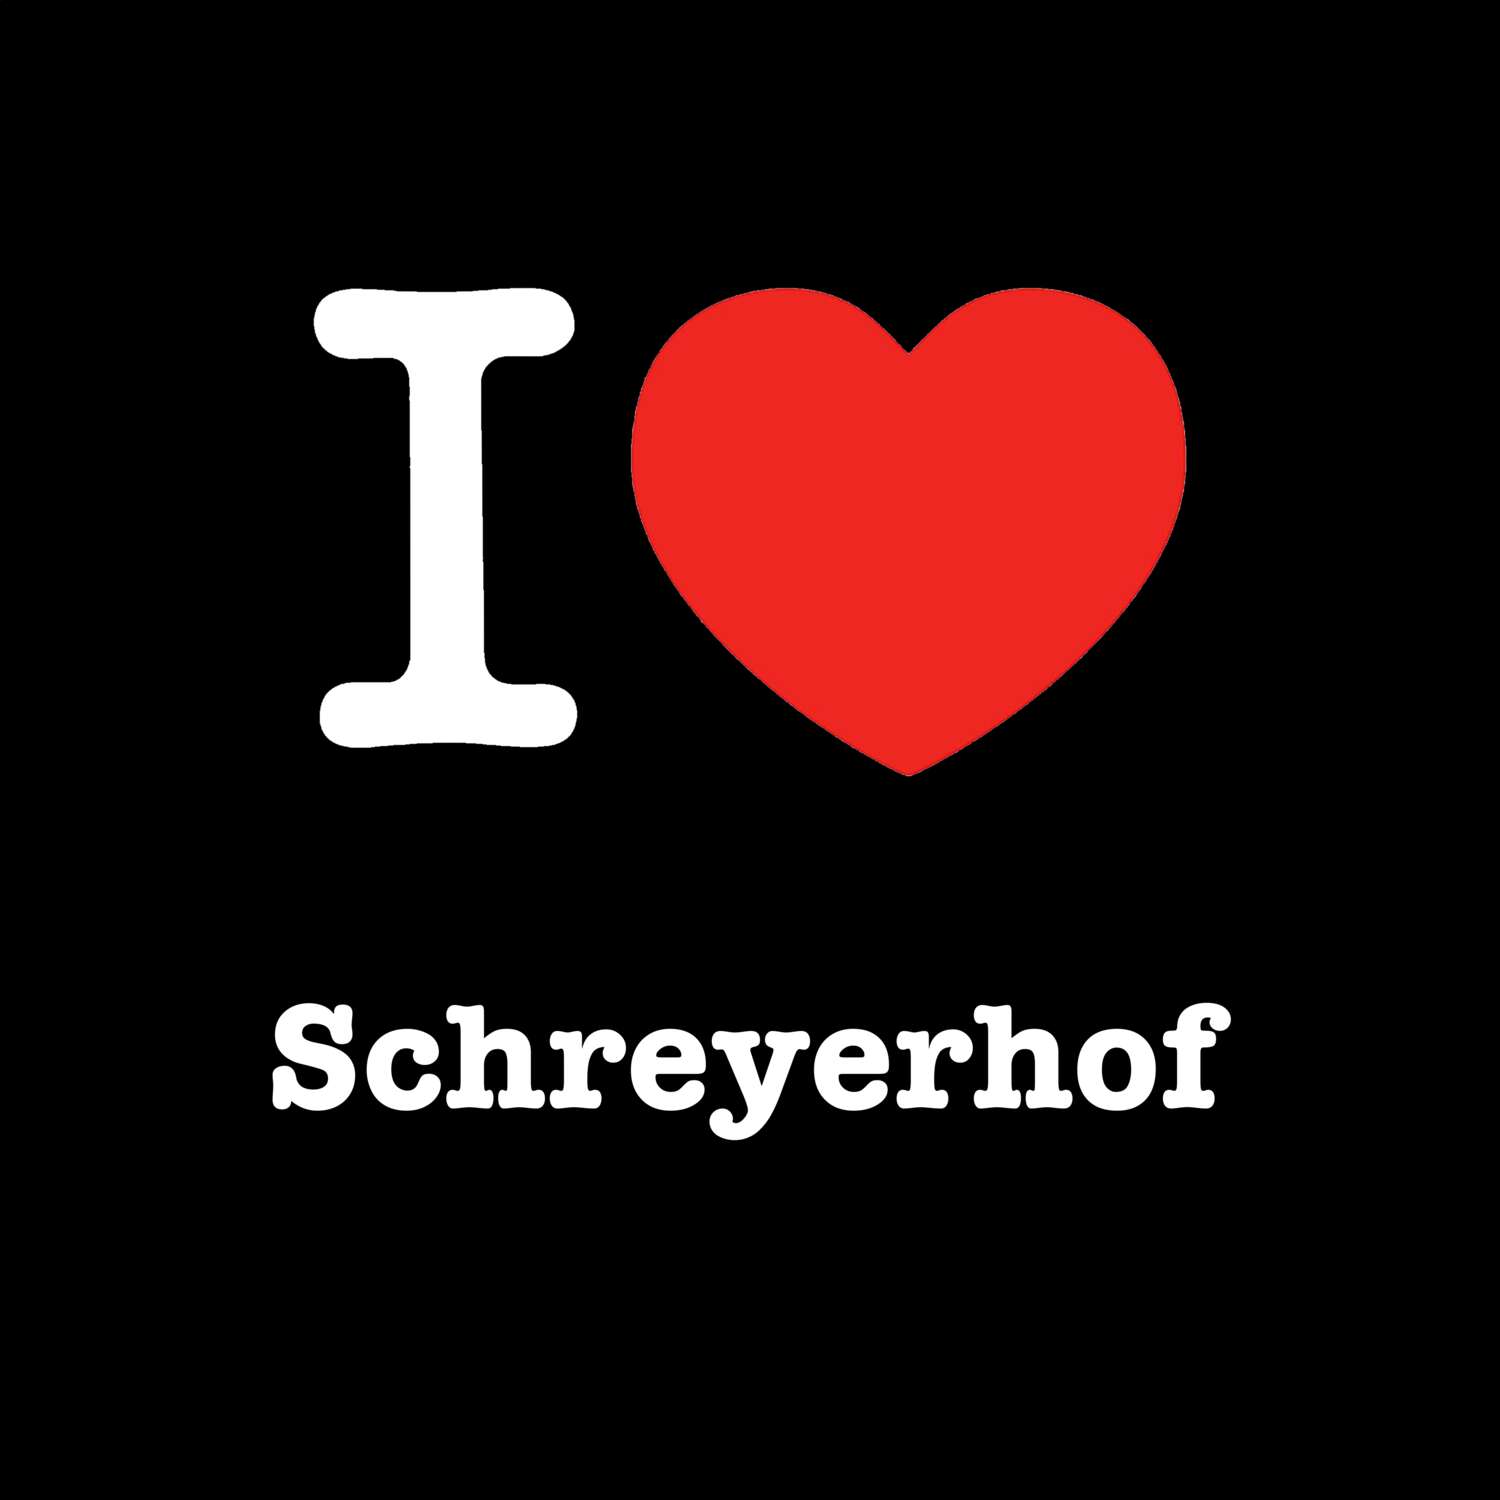 Schreyerhof T-Shirt »I love«